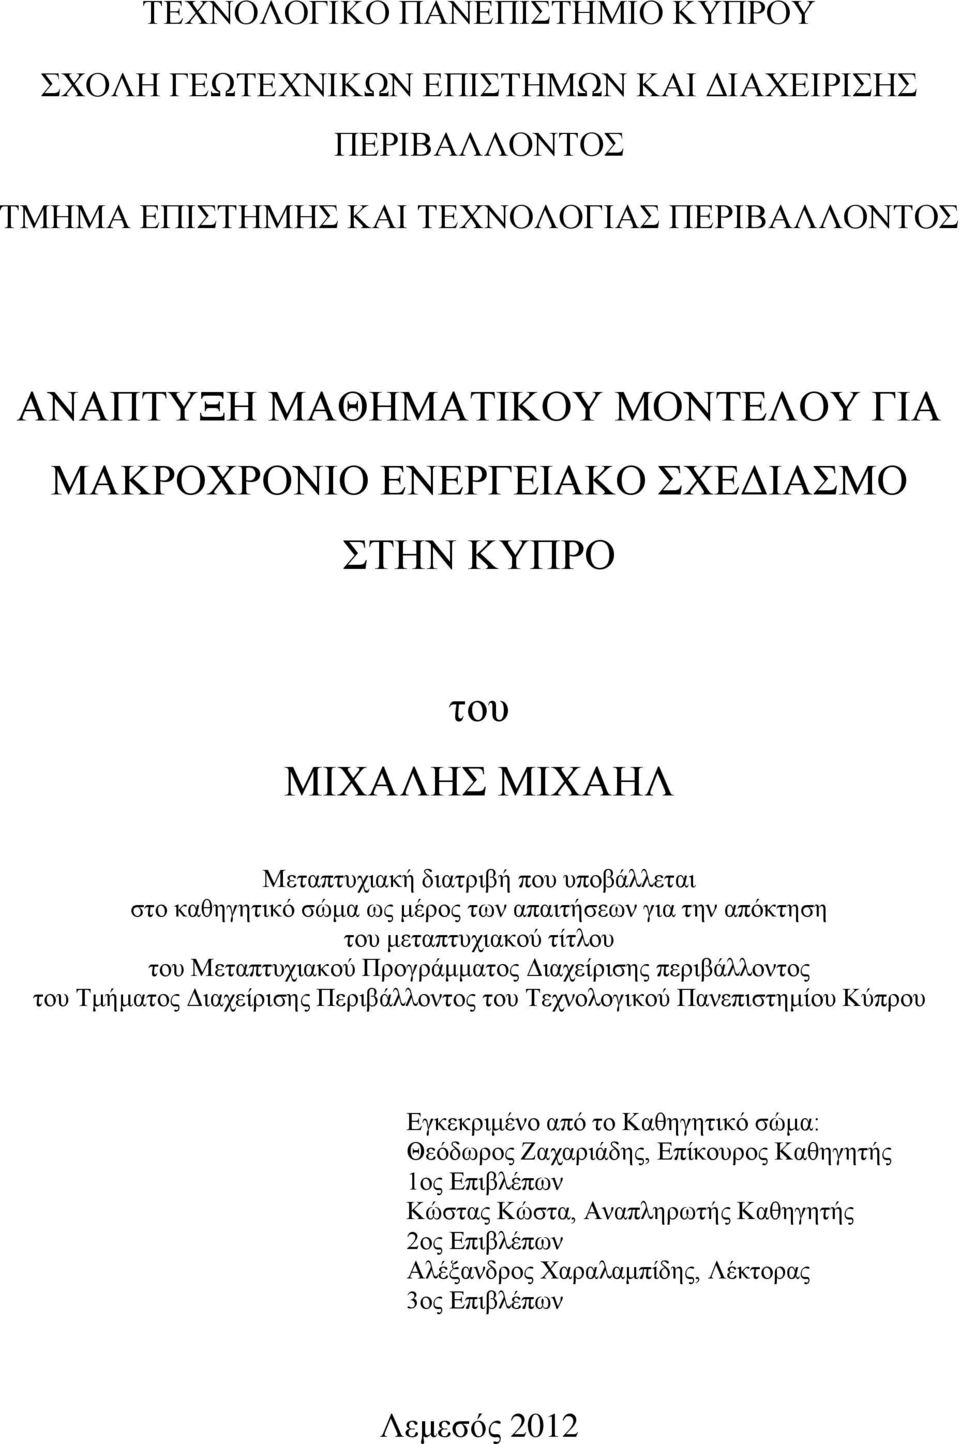 μεταπτυχιακού τίτλου του Μεταπτυχιακού Προγράμματος Διαχείρισης περιβάλλοντος του Τμήματος Διαχείρισης Περιβάλλοντος του Τεχνολογικού Πανεπιστημίου Κύπρου Εγκεκριμένο από